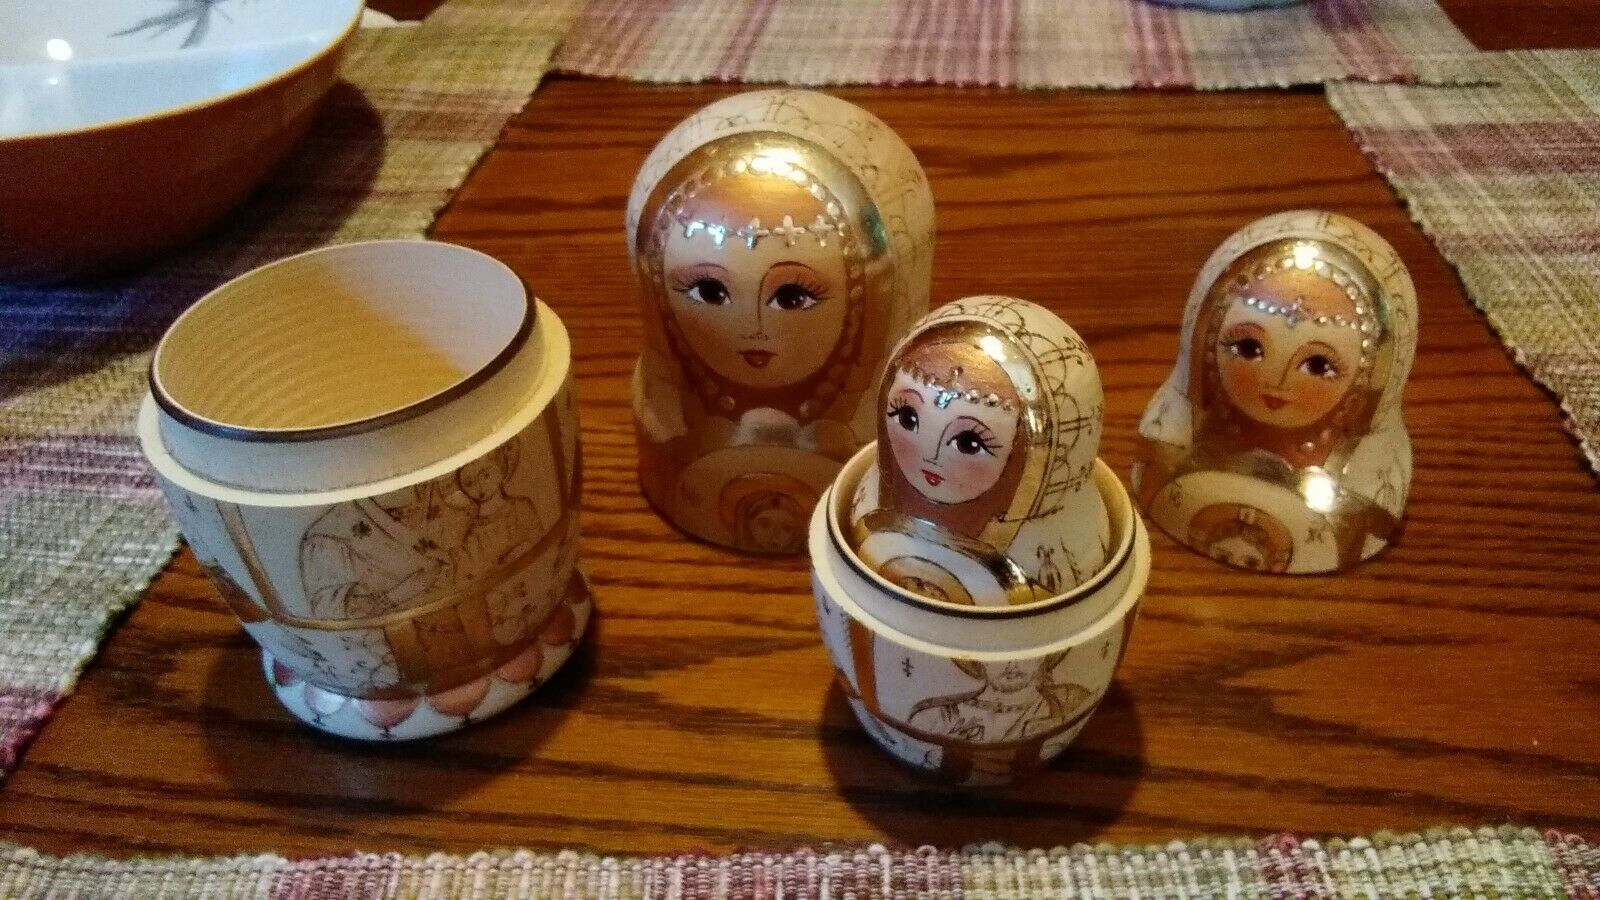 Matryoshka Russian Nesting Doll - Religious Theme - Mary And Baby Jesus